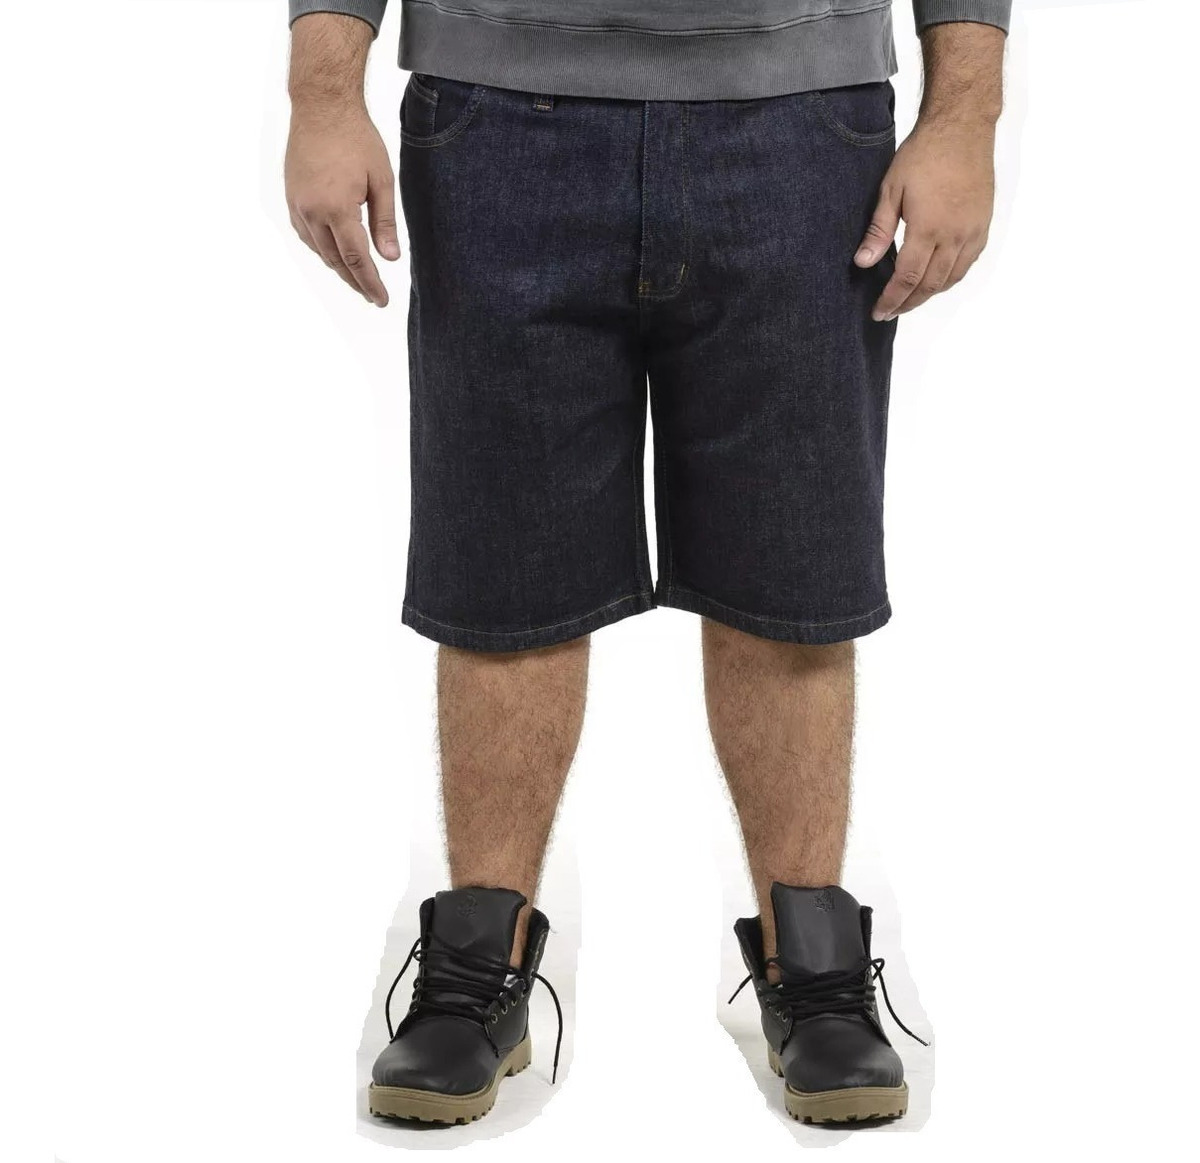 bermuda jeans com lycra masculina